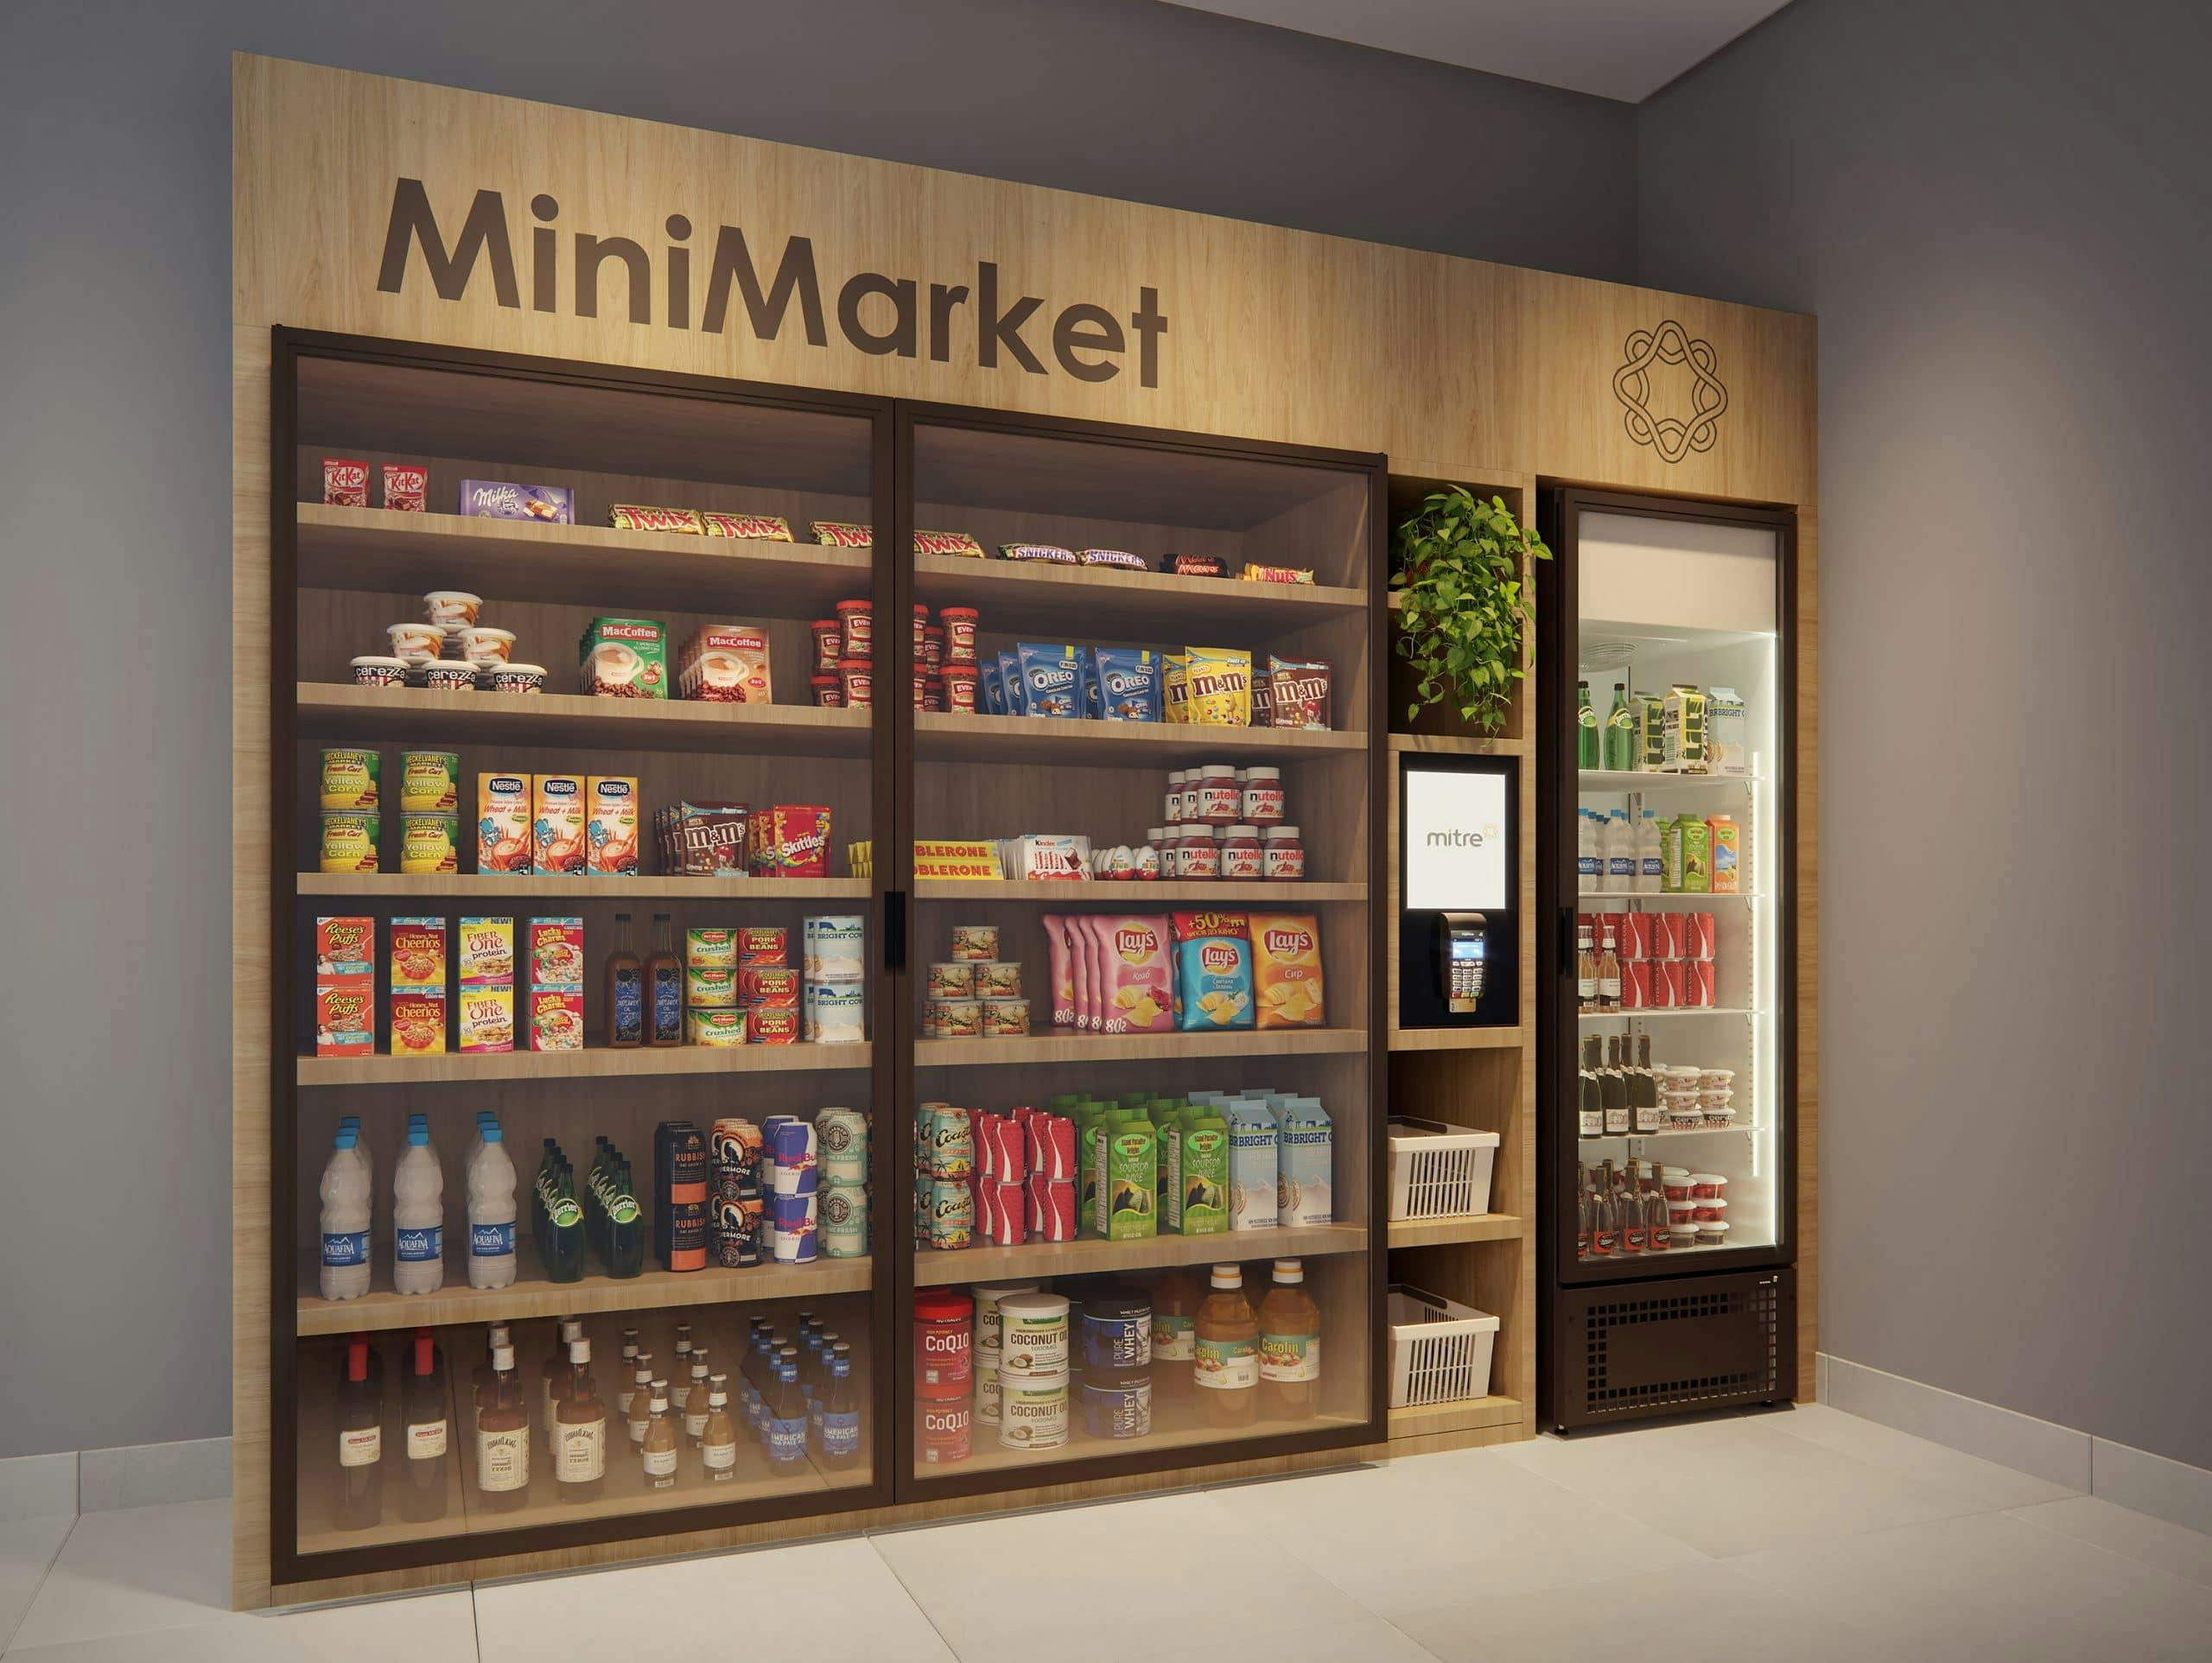 Imagem 3D do Mini Market Terreo